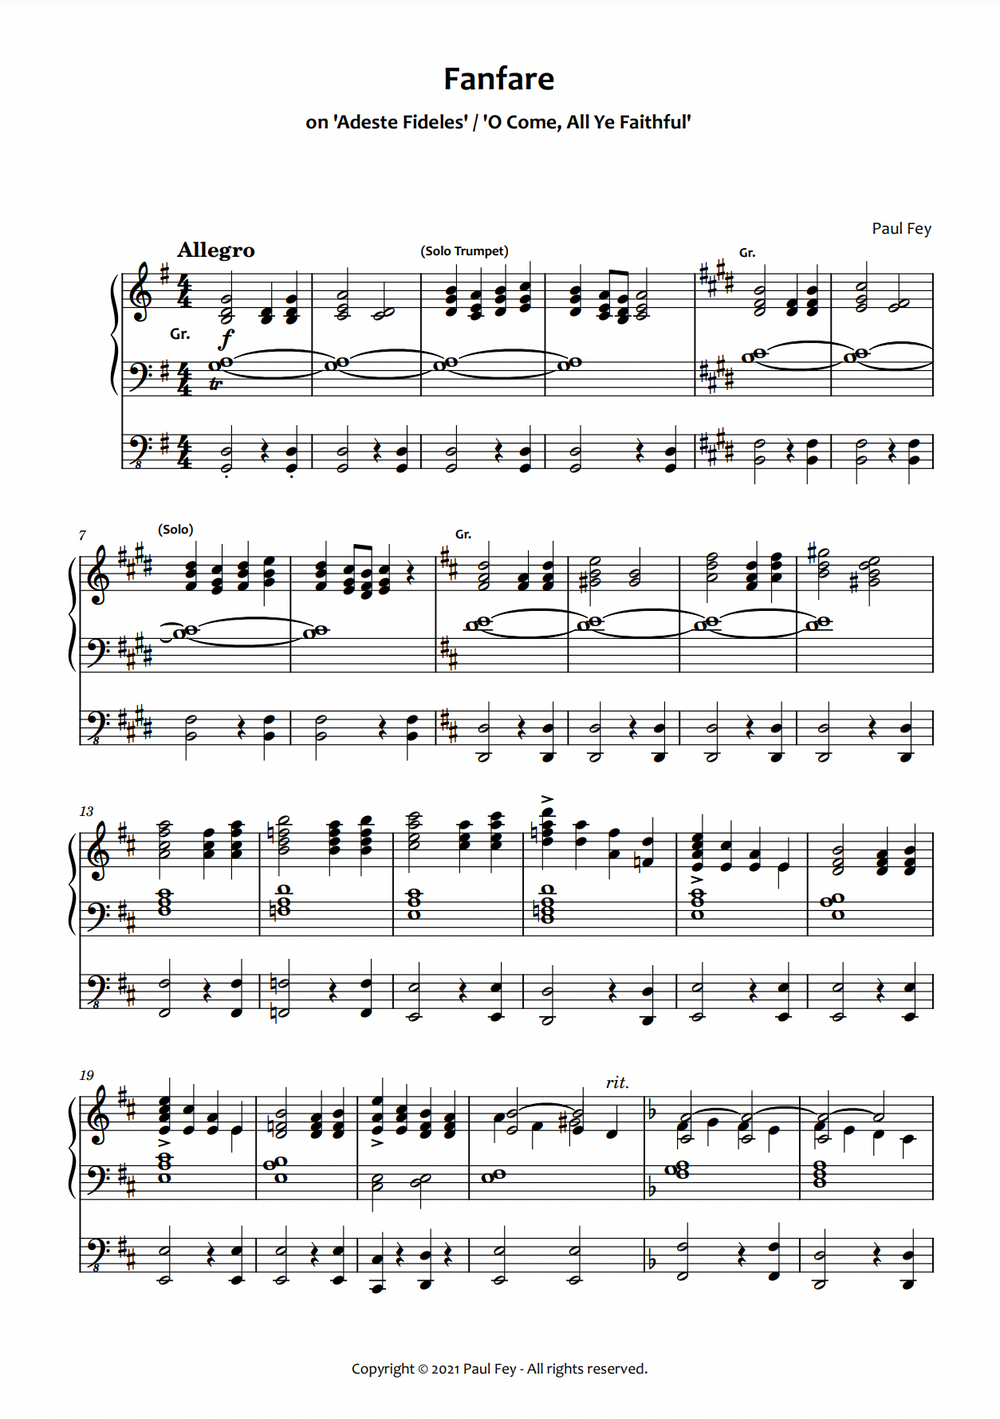 Fanfare on "Adeste Fideles" (Sheet Music) - Music for Organ